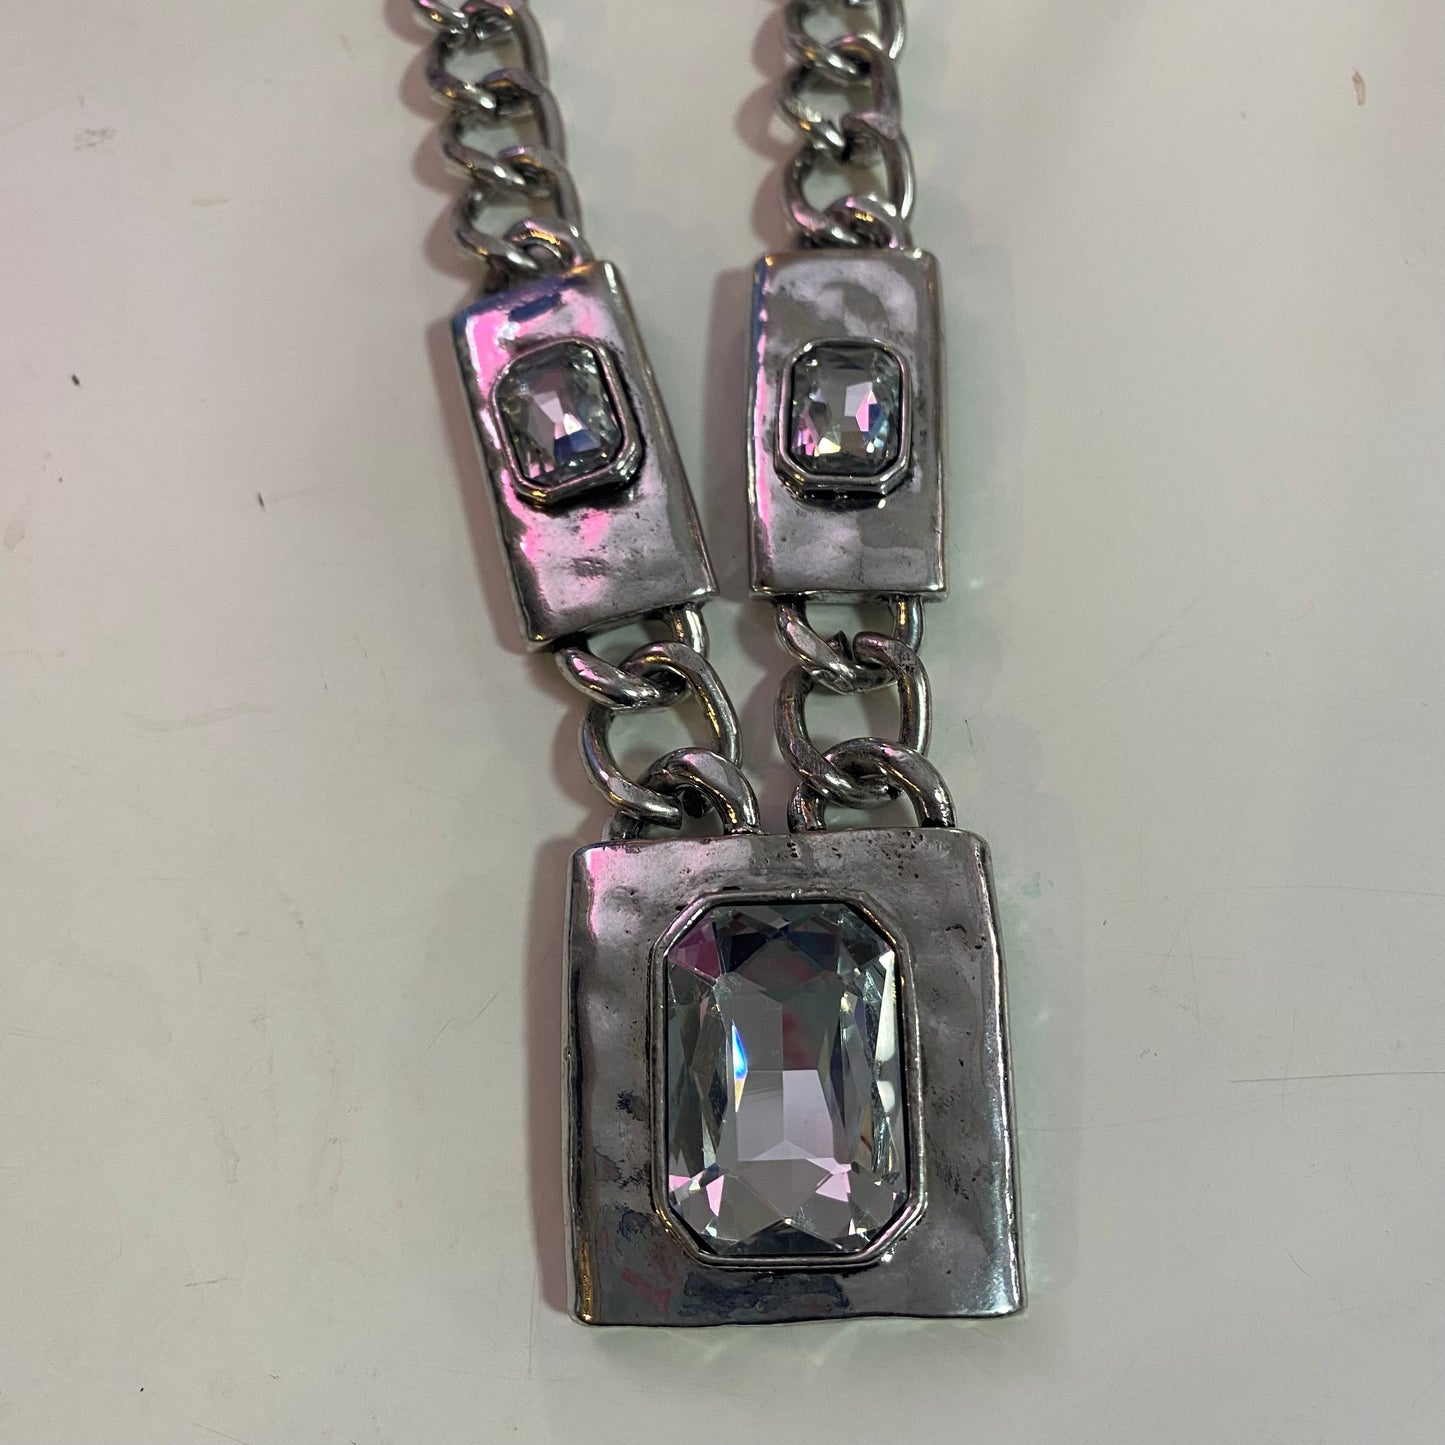 Cubed Quartz Silver Fashion Necklace